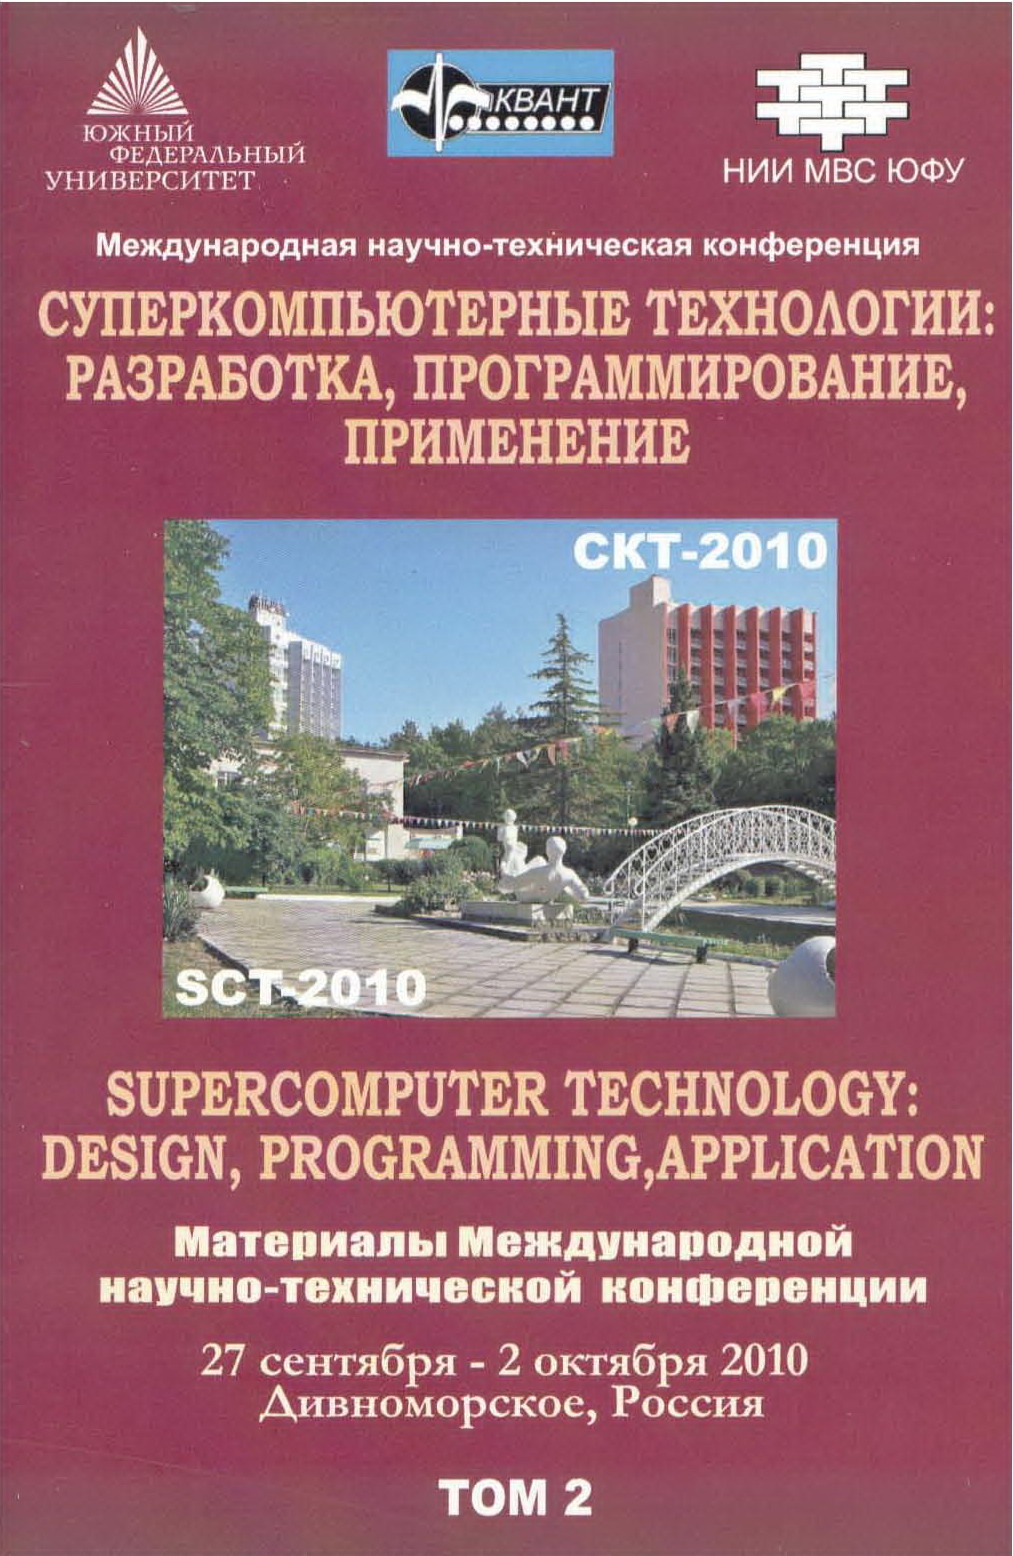 Суперкомпьютерные технологии: разработка, программирование, применение (СКТ-2010). Материалы международной научно-технической конференции